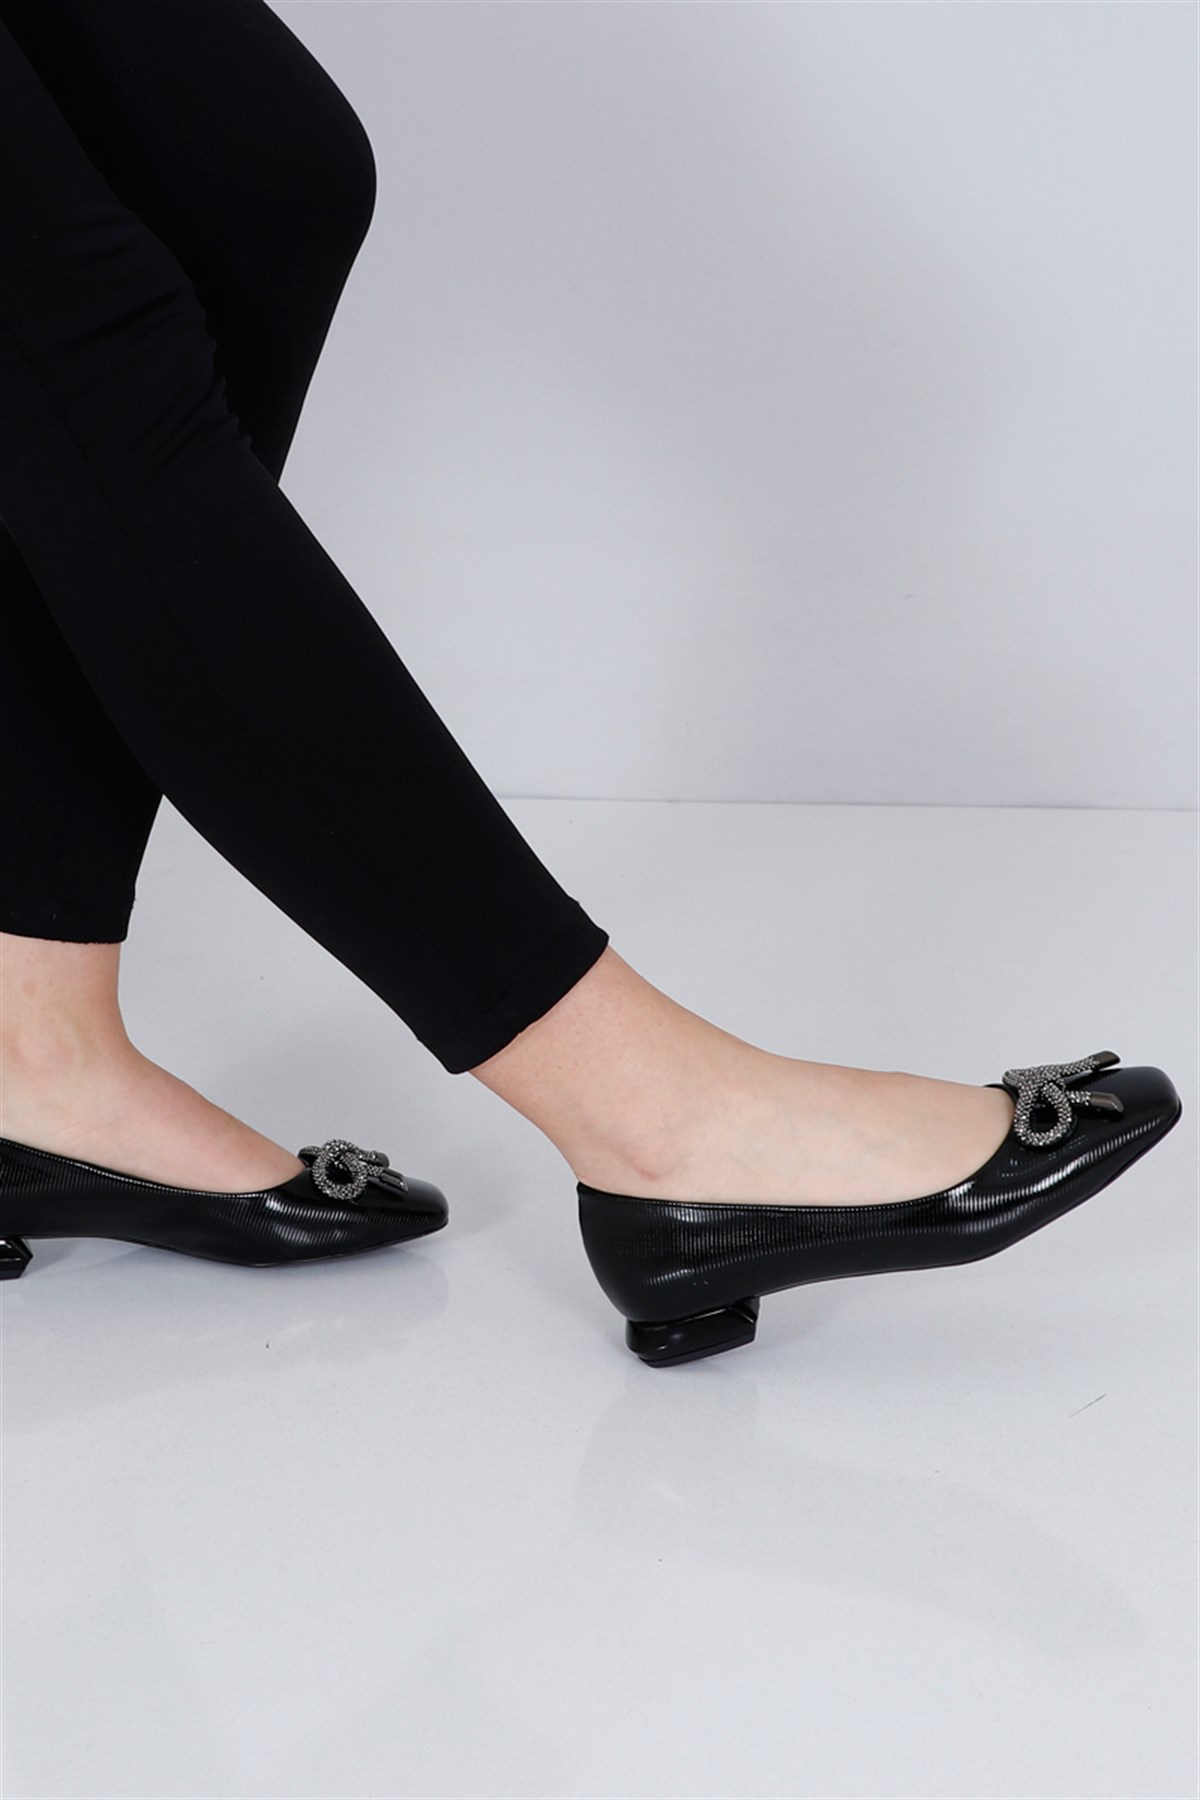 Siyah çizgili Topuklu Kadın Babet 3003 Fiyatı ve Modelleri